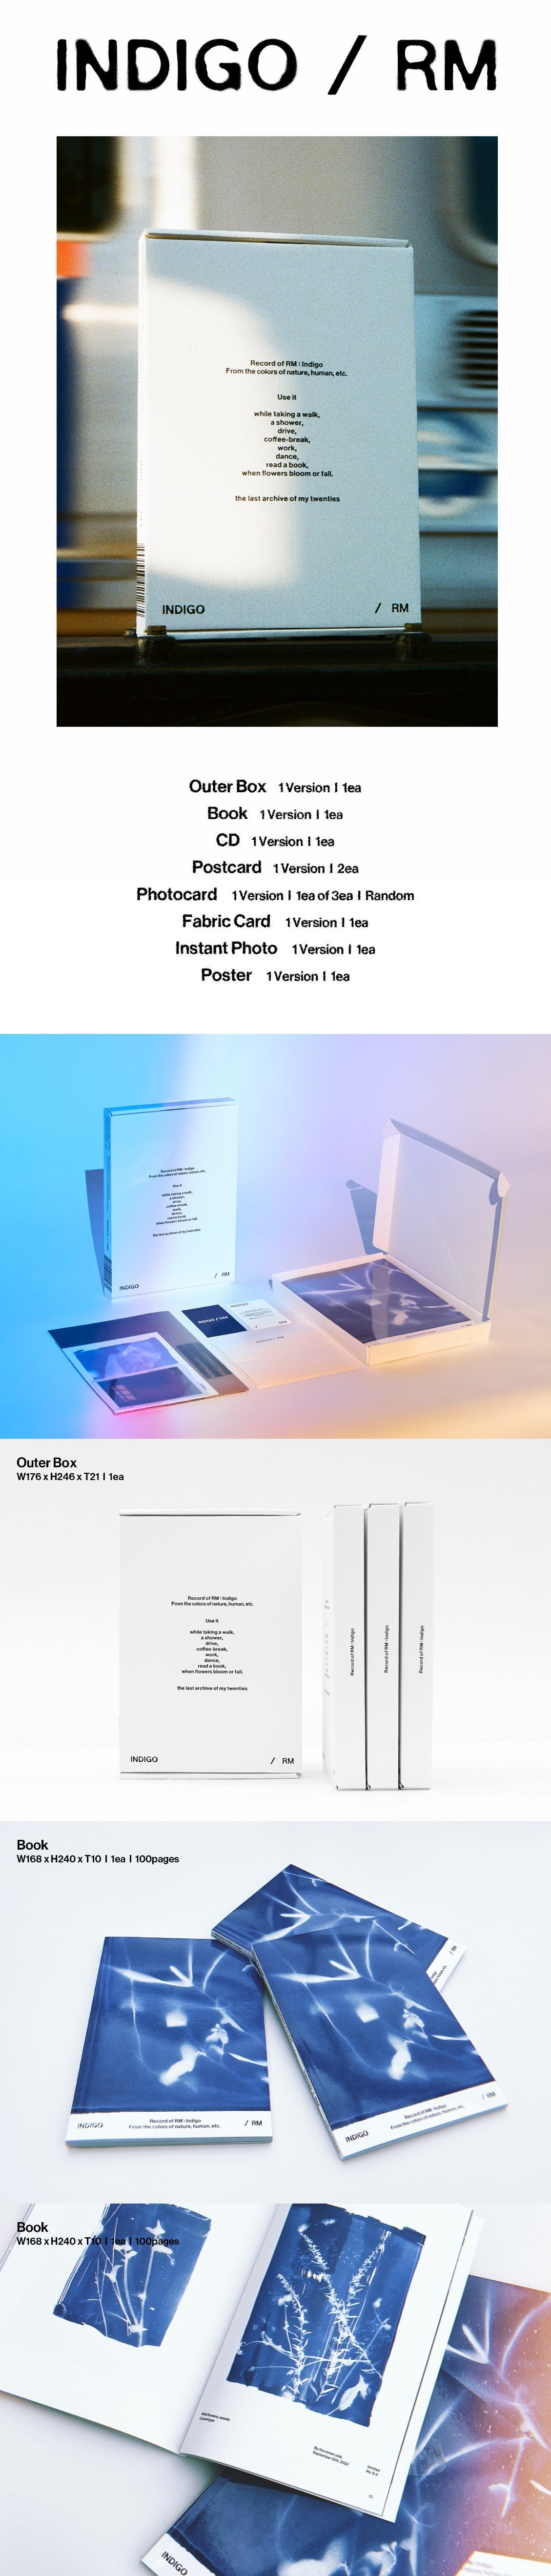 K-Pop CD RM (BTS) - Solo Album 'Indigo' Book Edition